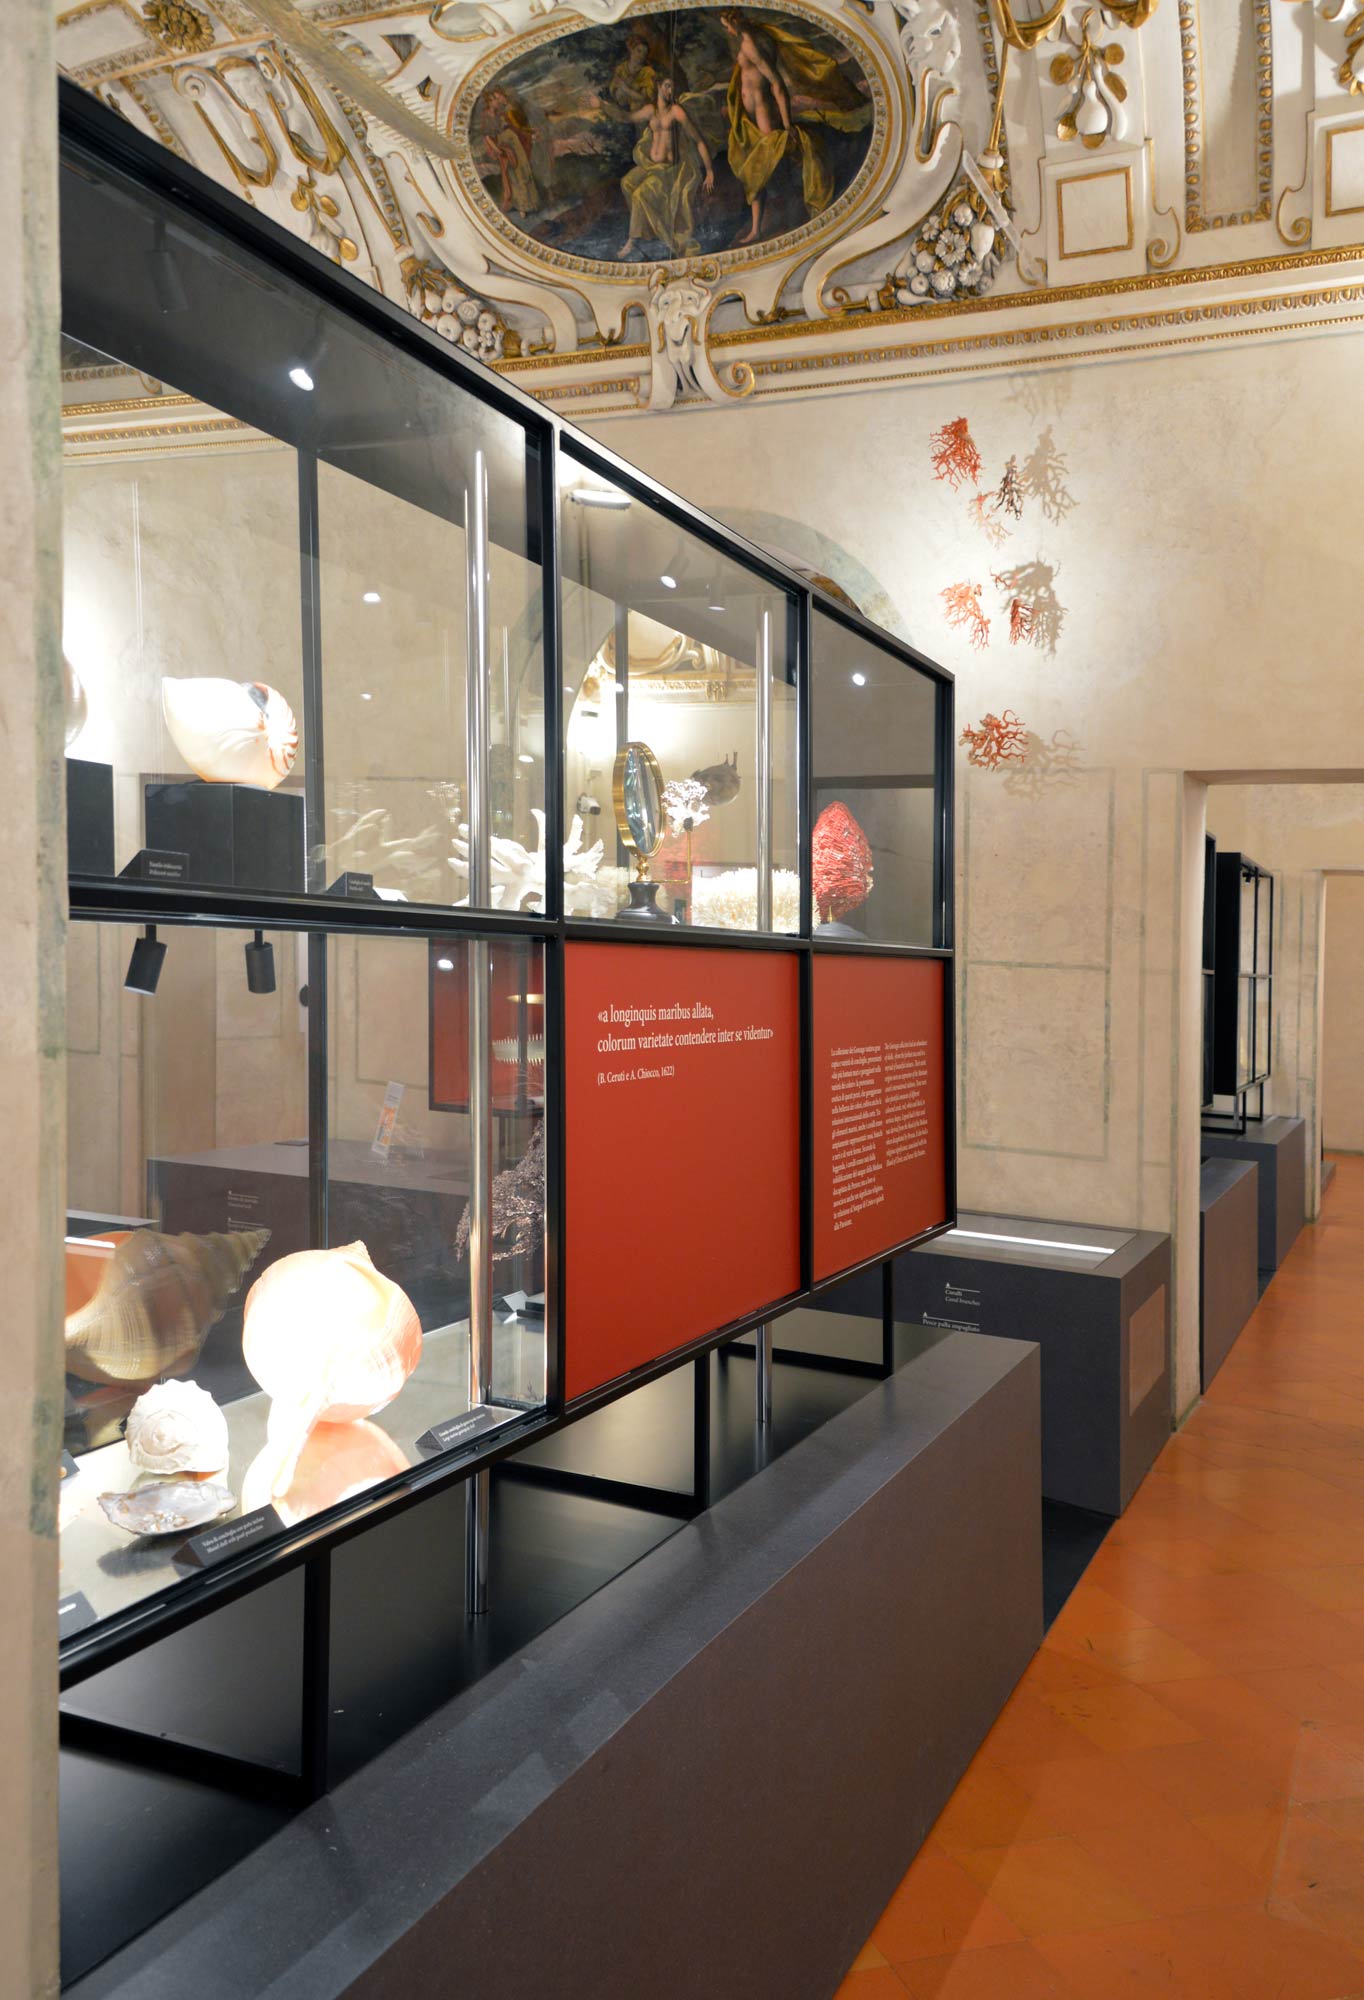 L'allestimento Naturalia e Mirabilia nella Galleria delle Metamorfosi di Palazzo Ducale, Mantova. Foto di Palazzo Ducale
